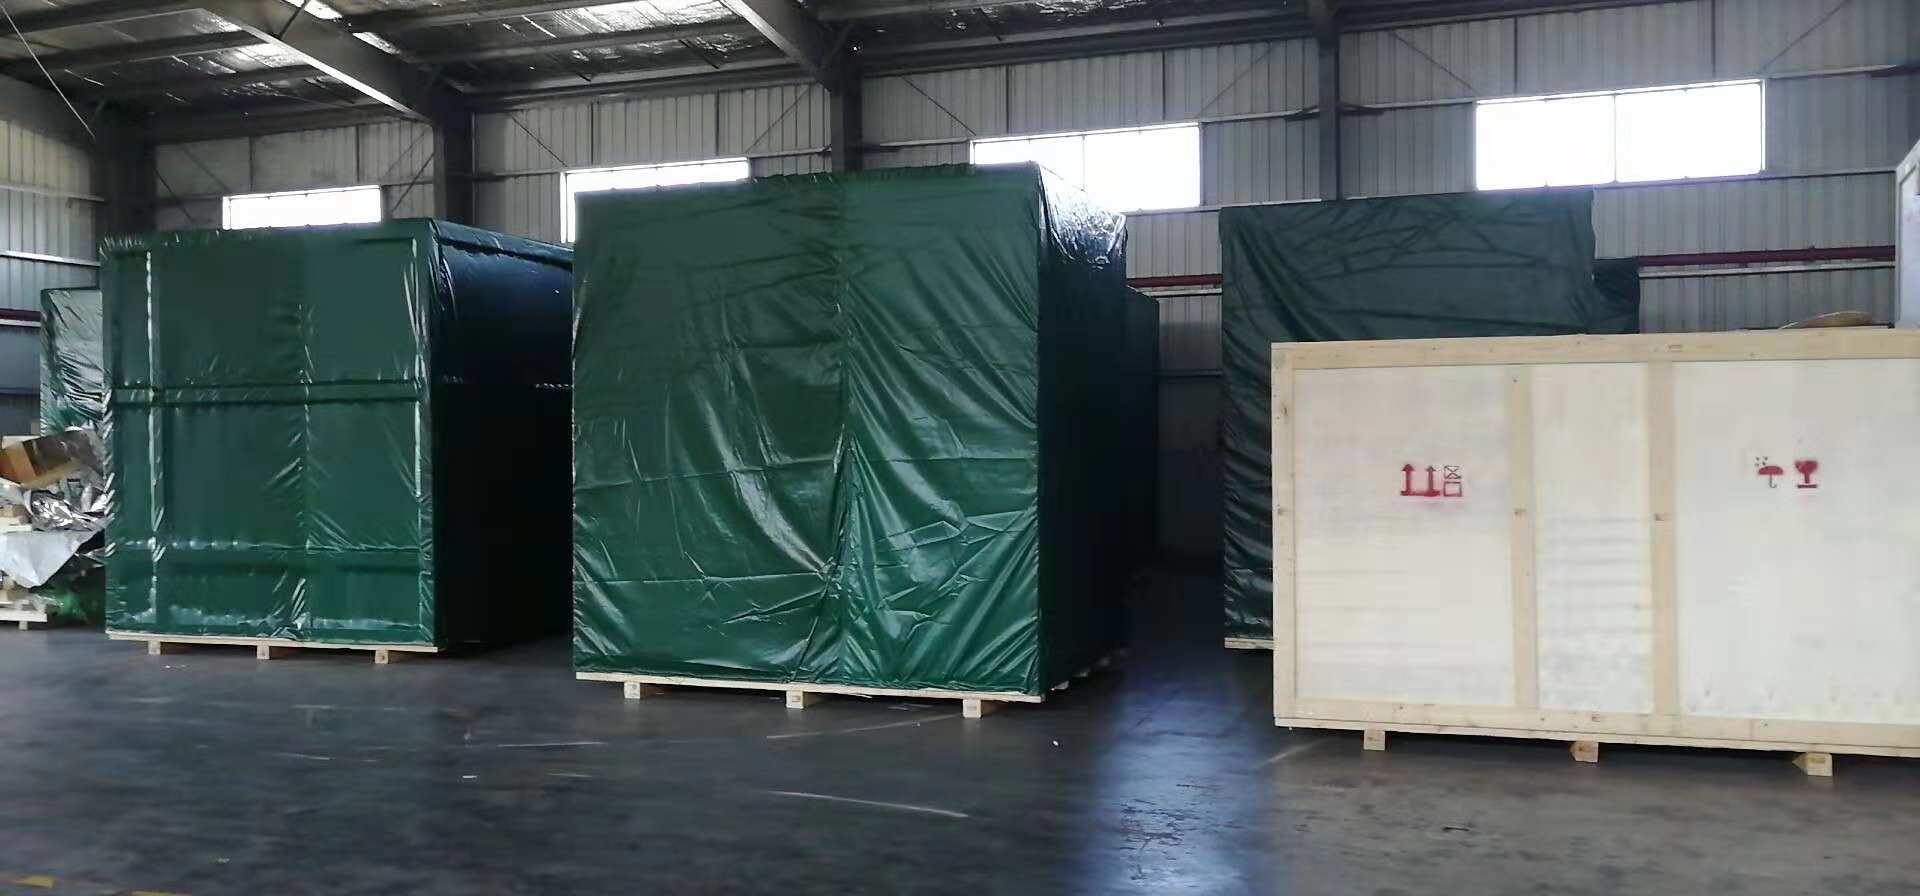 珠海工厂搬迁生产线改造搬迁吊装安装木箱出口真空包装公司